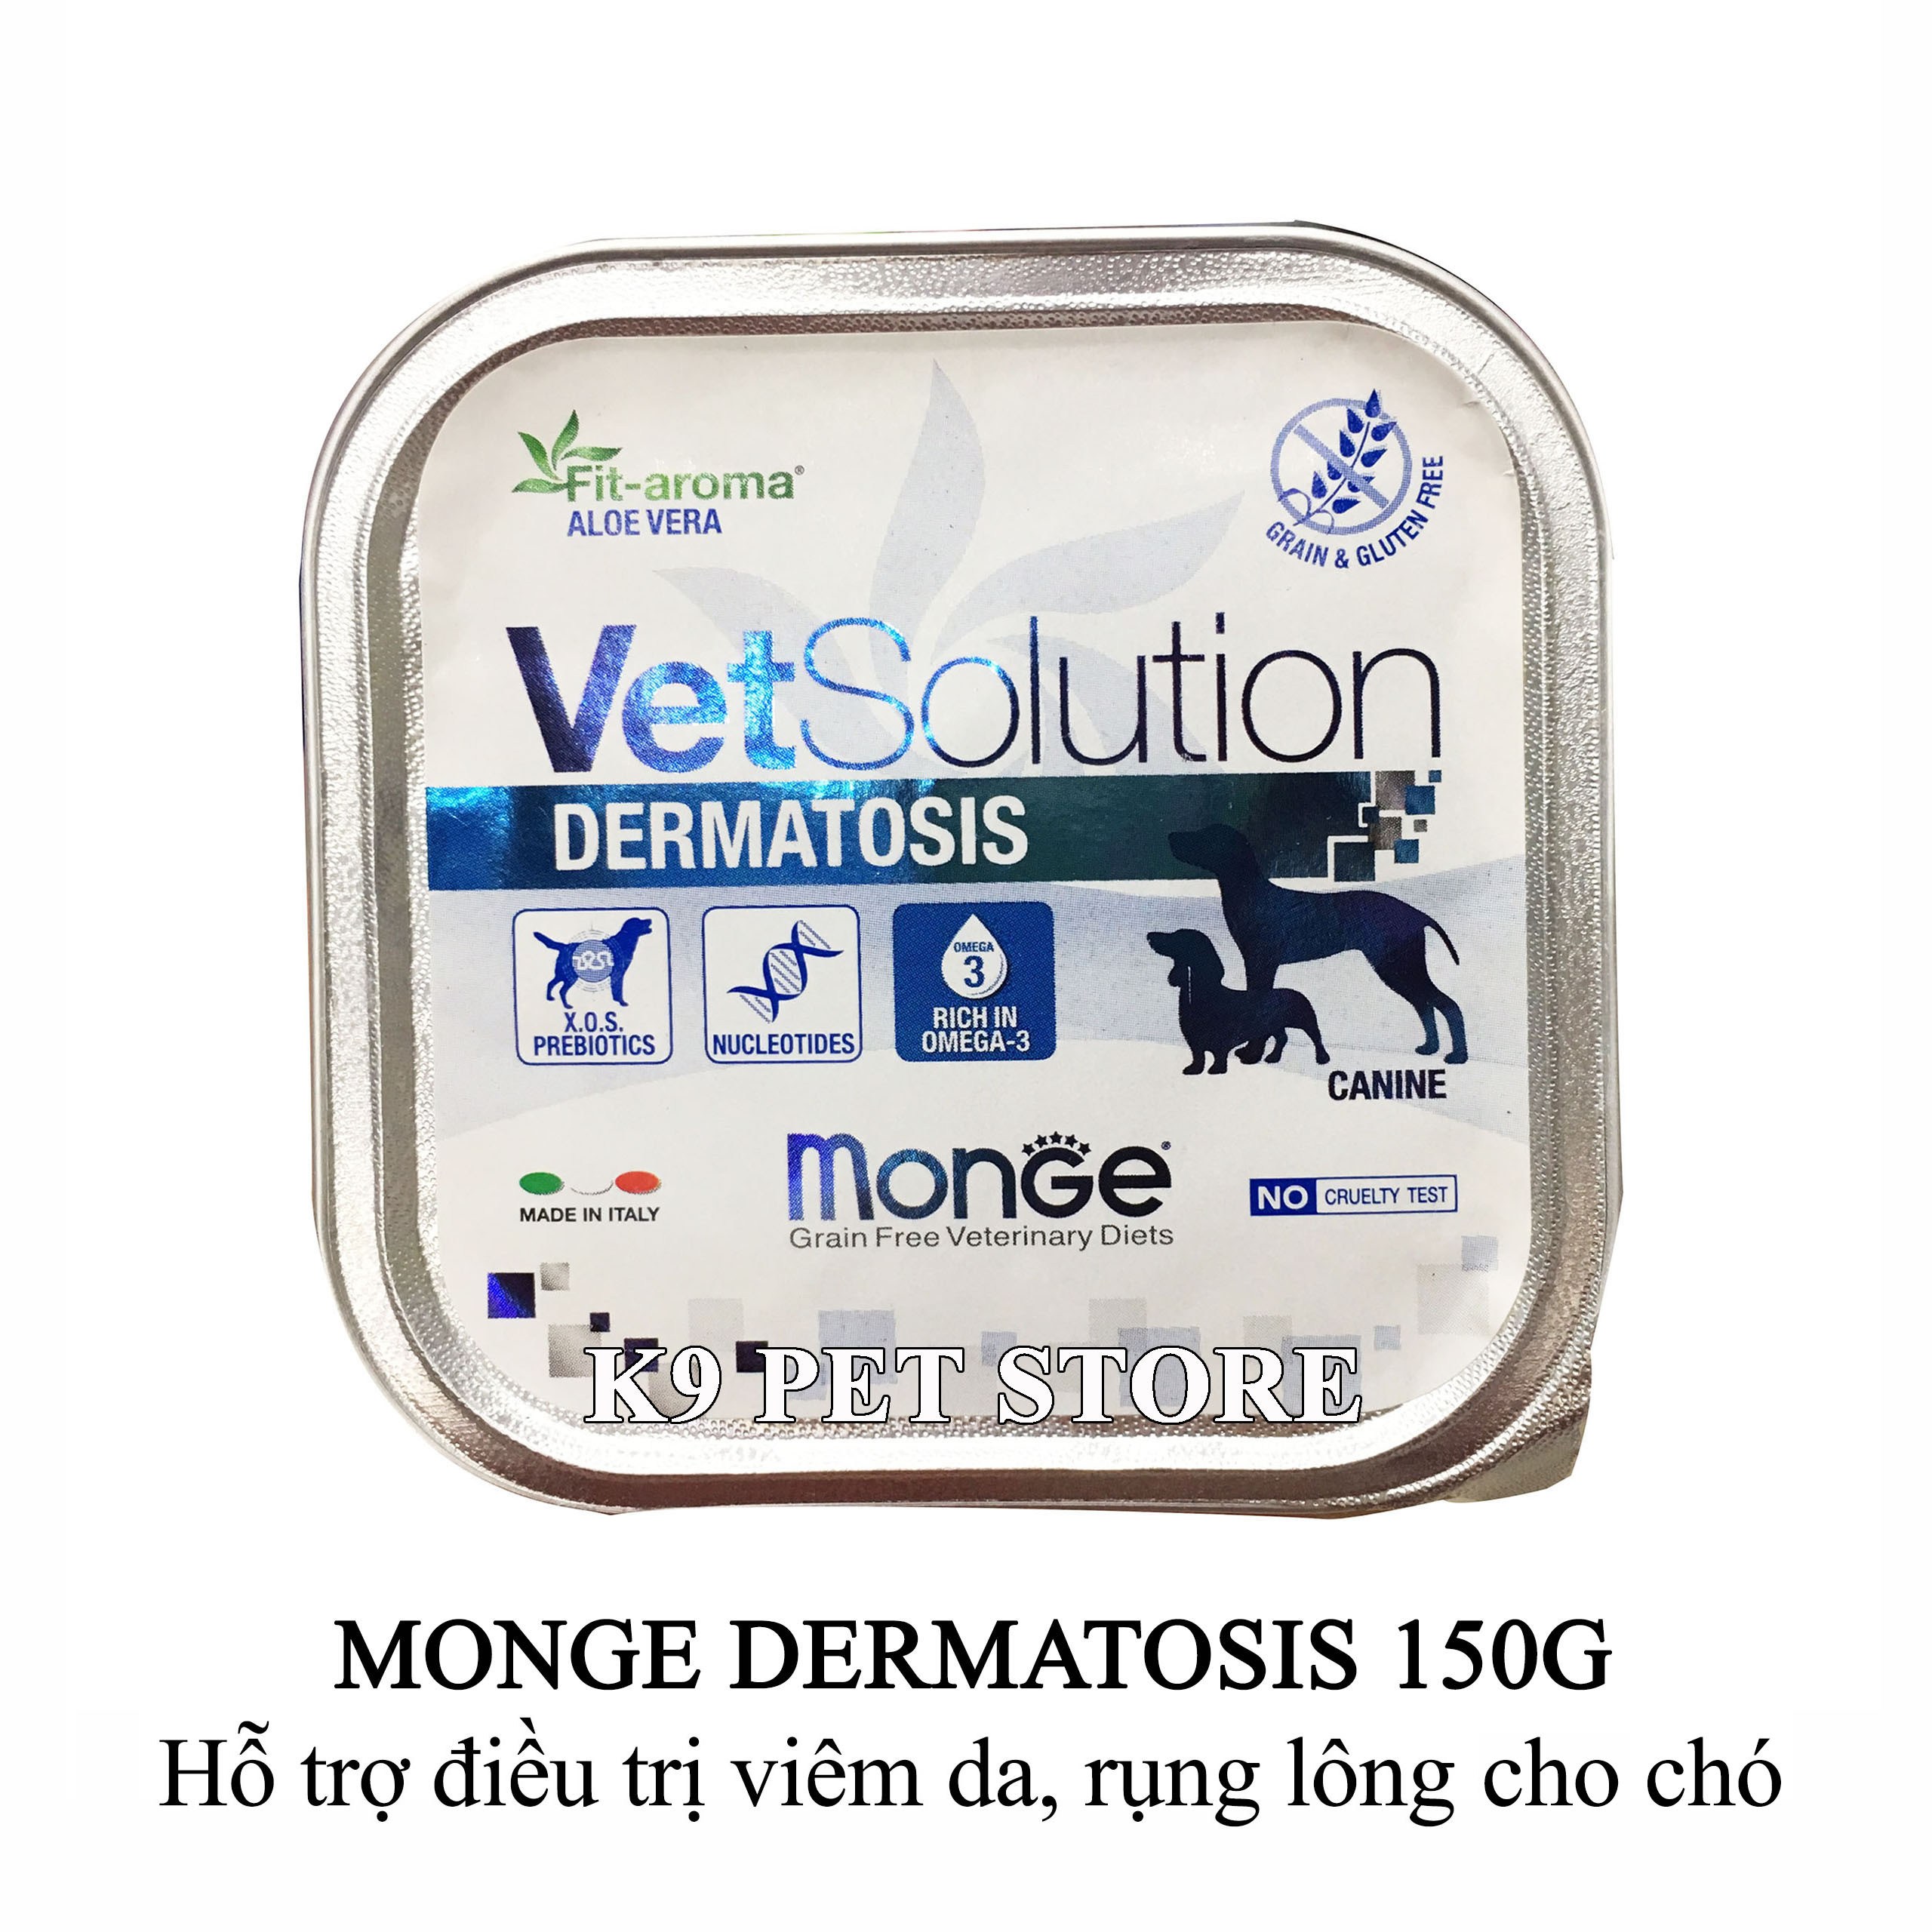 Pate Monge Dermatosis 150g - Hỗ trợ điều trị viêm da, rụng lông cho chó